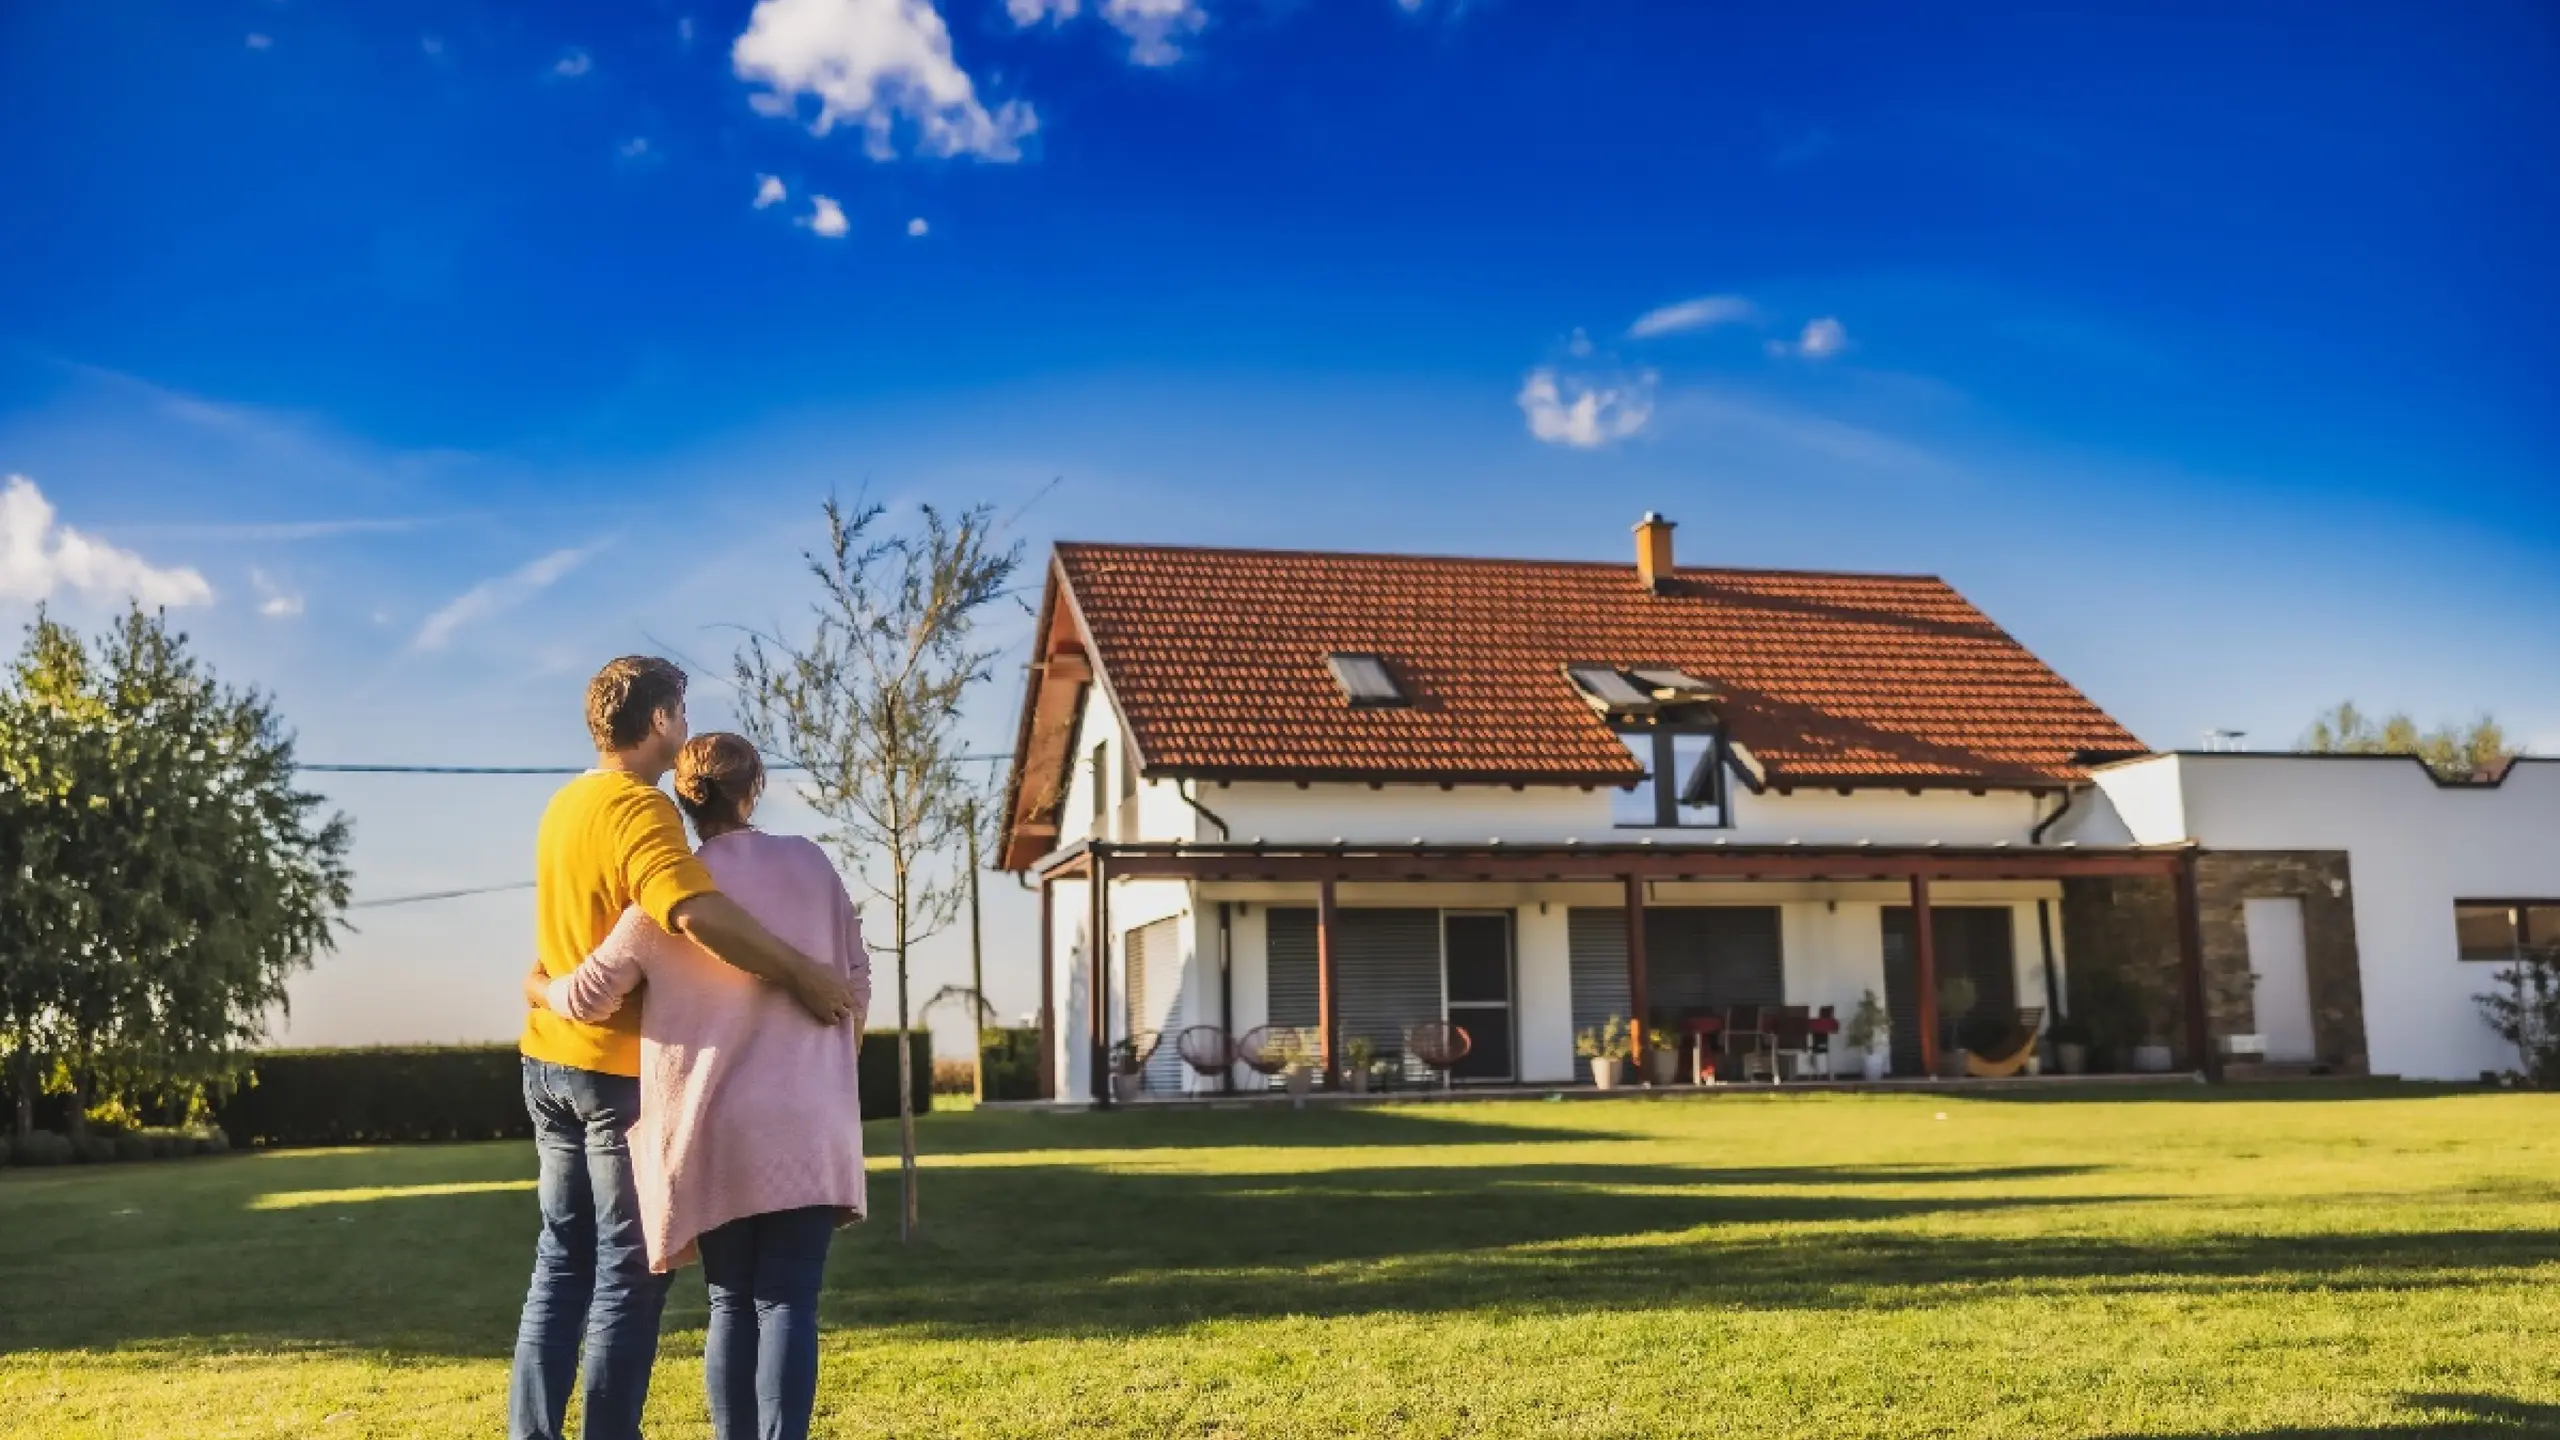 Mietkauf – alternative Finanzierungsform für Immobilien